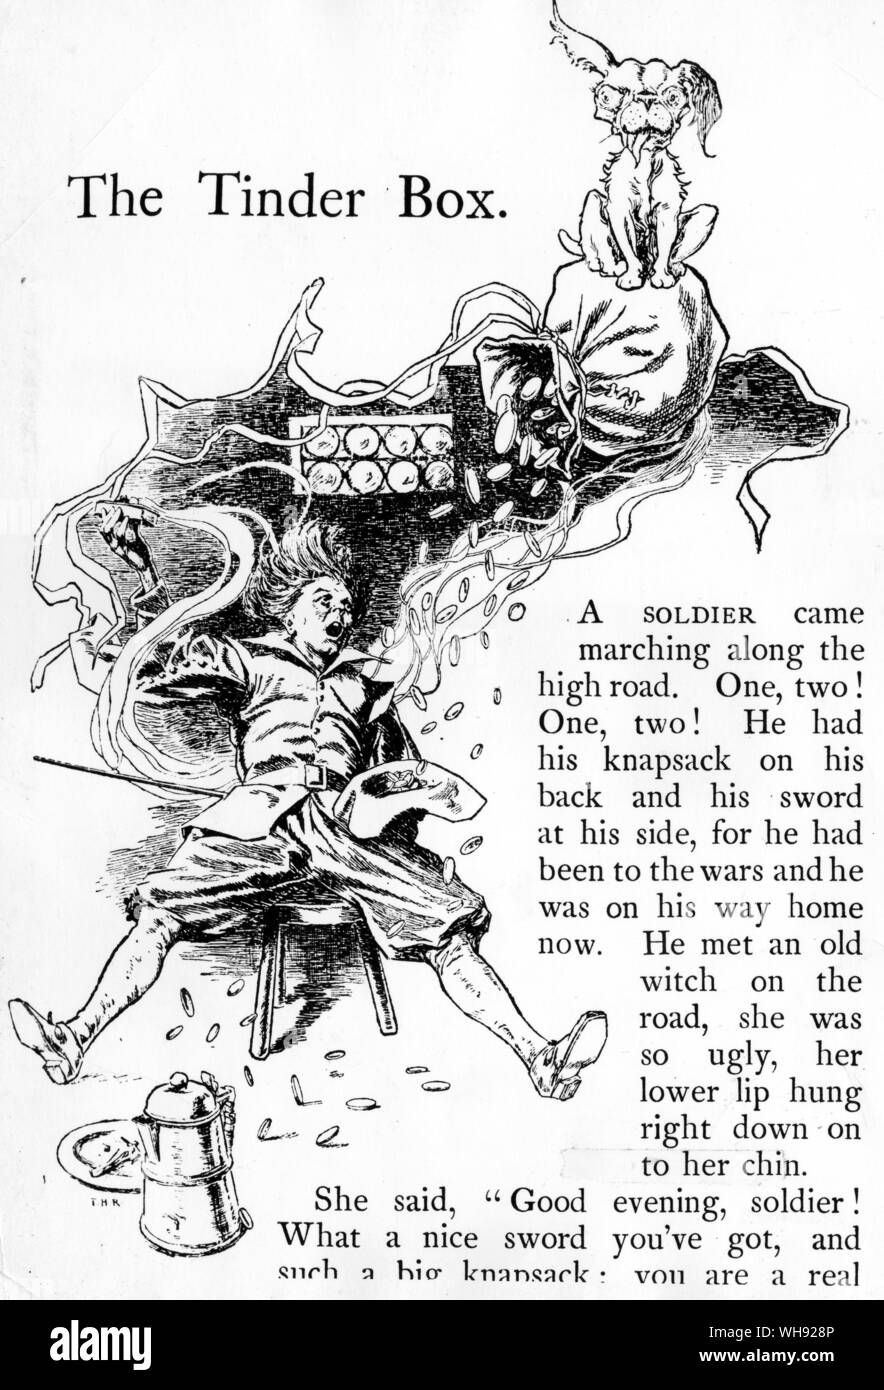 Il Tinder Box. La felicità di possedere una casella tinder è quasi travolgente. Illustrazione di Thomas Heath Robinson da Andersen di favole, 1899. Foto Stock